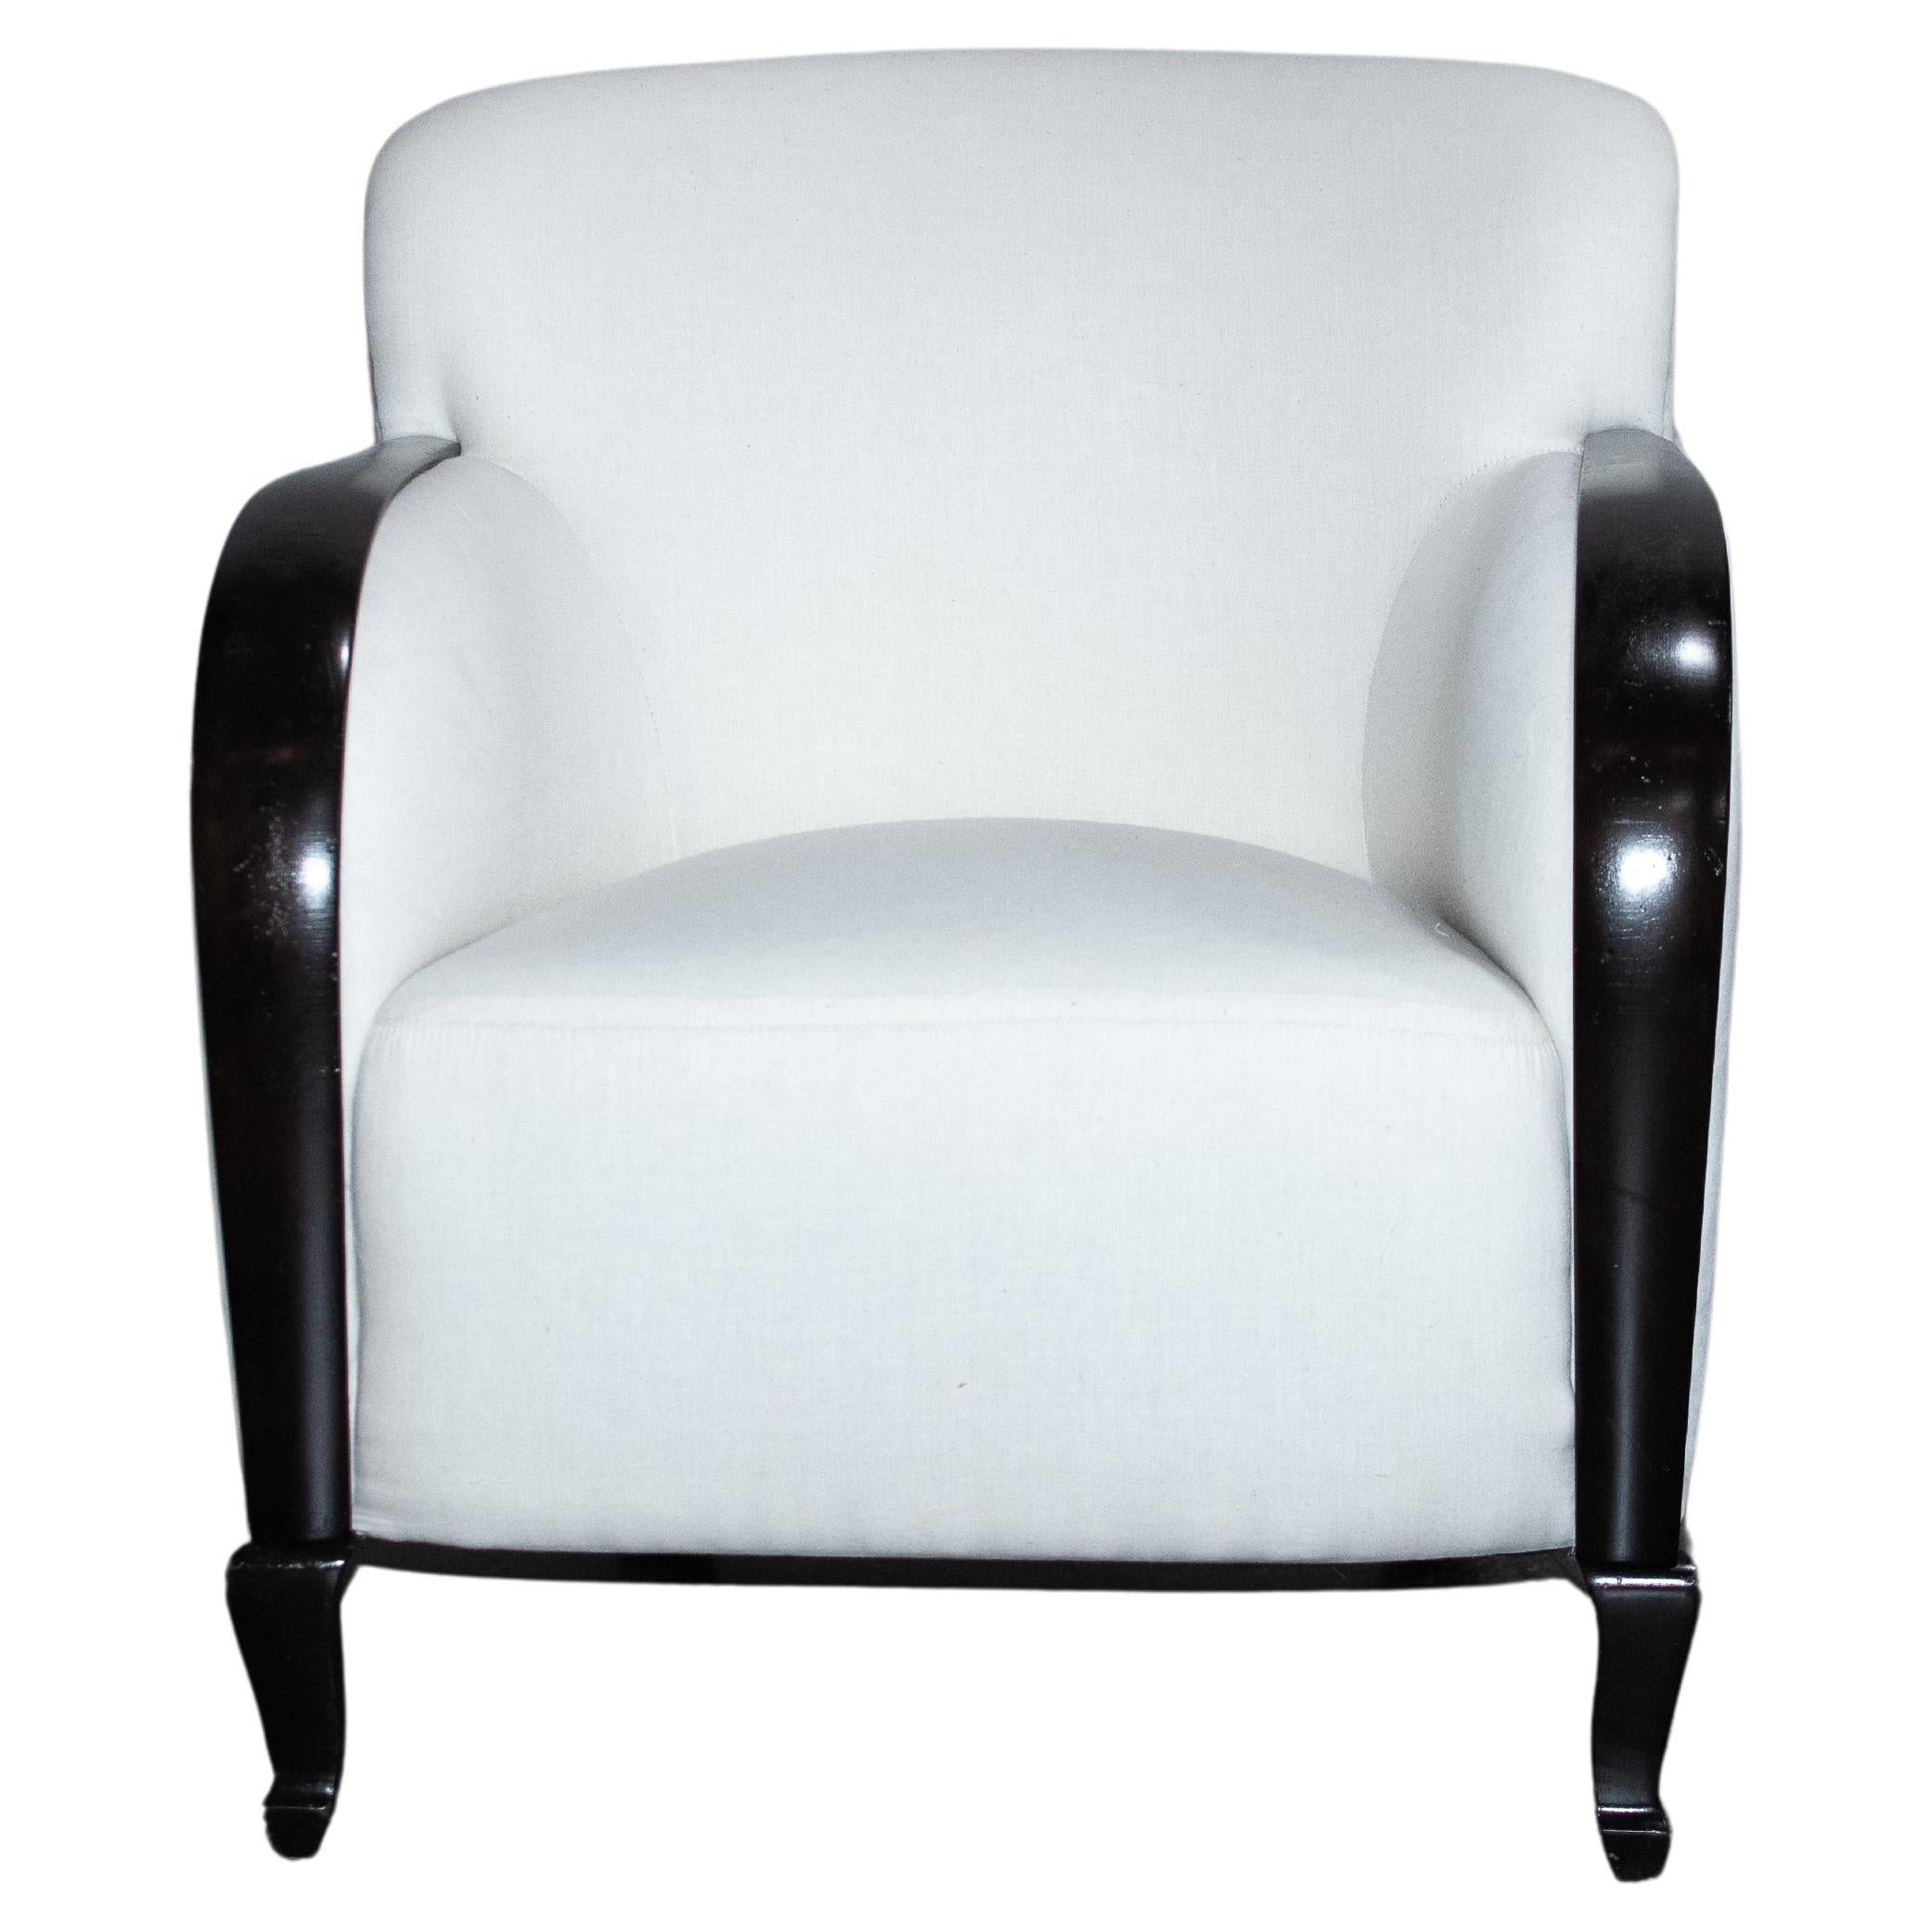 Swedish Art Deco Club Chair - COM Ready